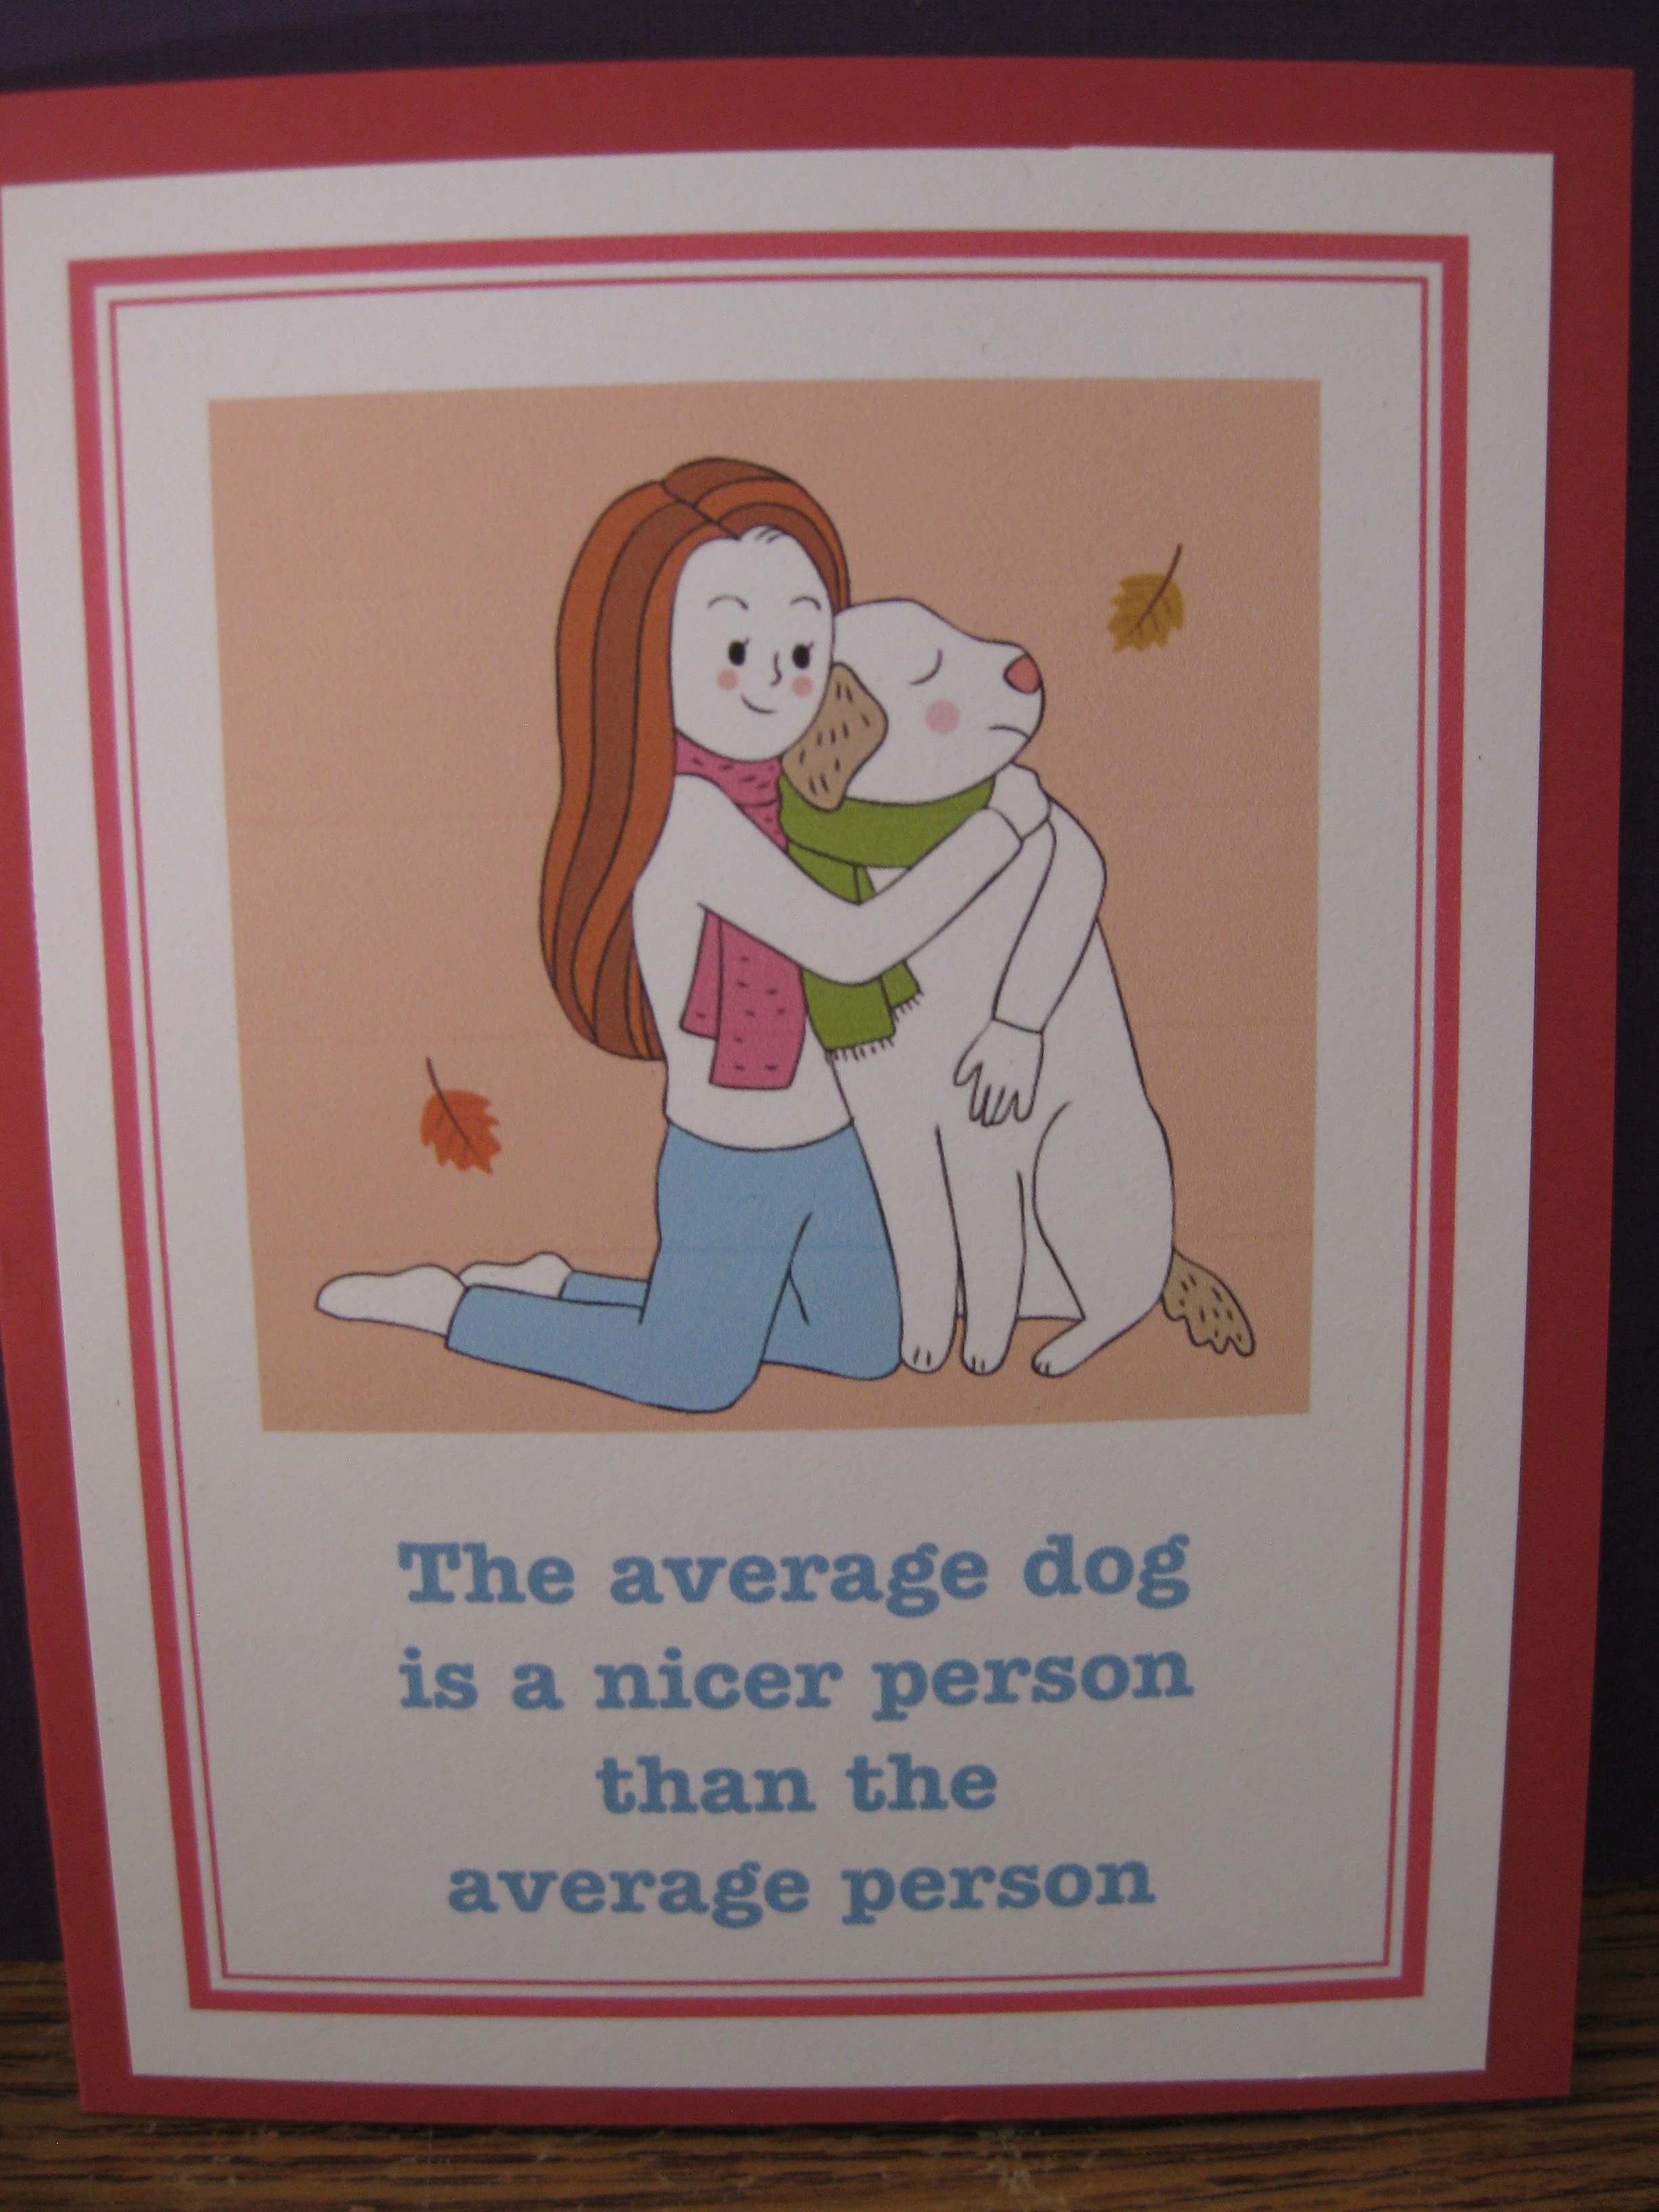 The average dog